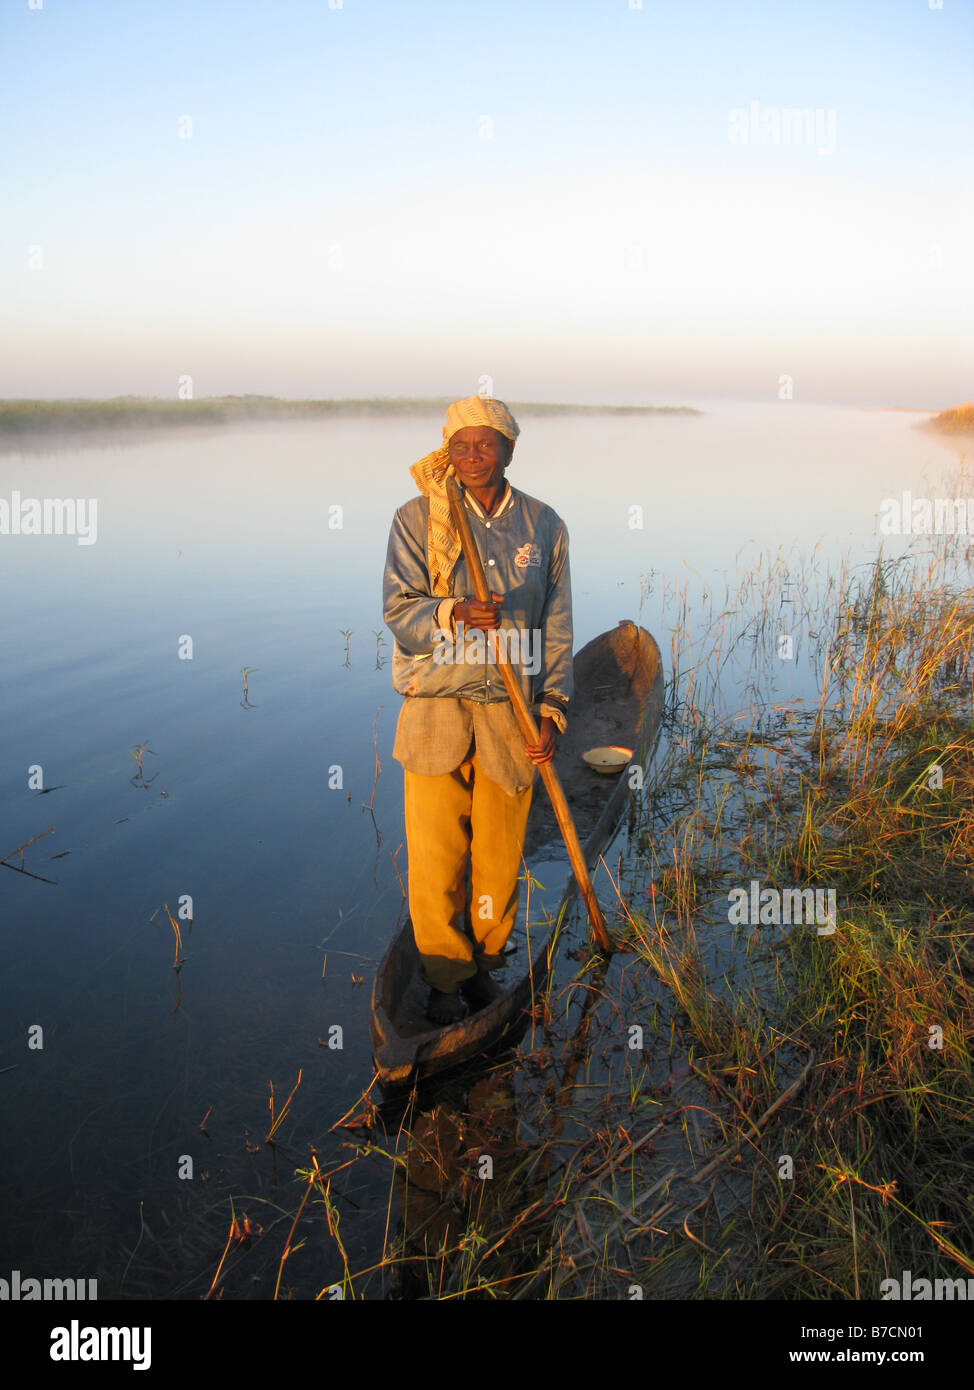 Aux yeux d'un pêcheur en pirogue sur les rives de l'affluent de la rivière Luapula Congo République démocratique du Congo Banque D'Images